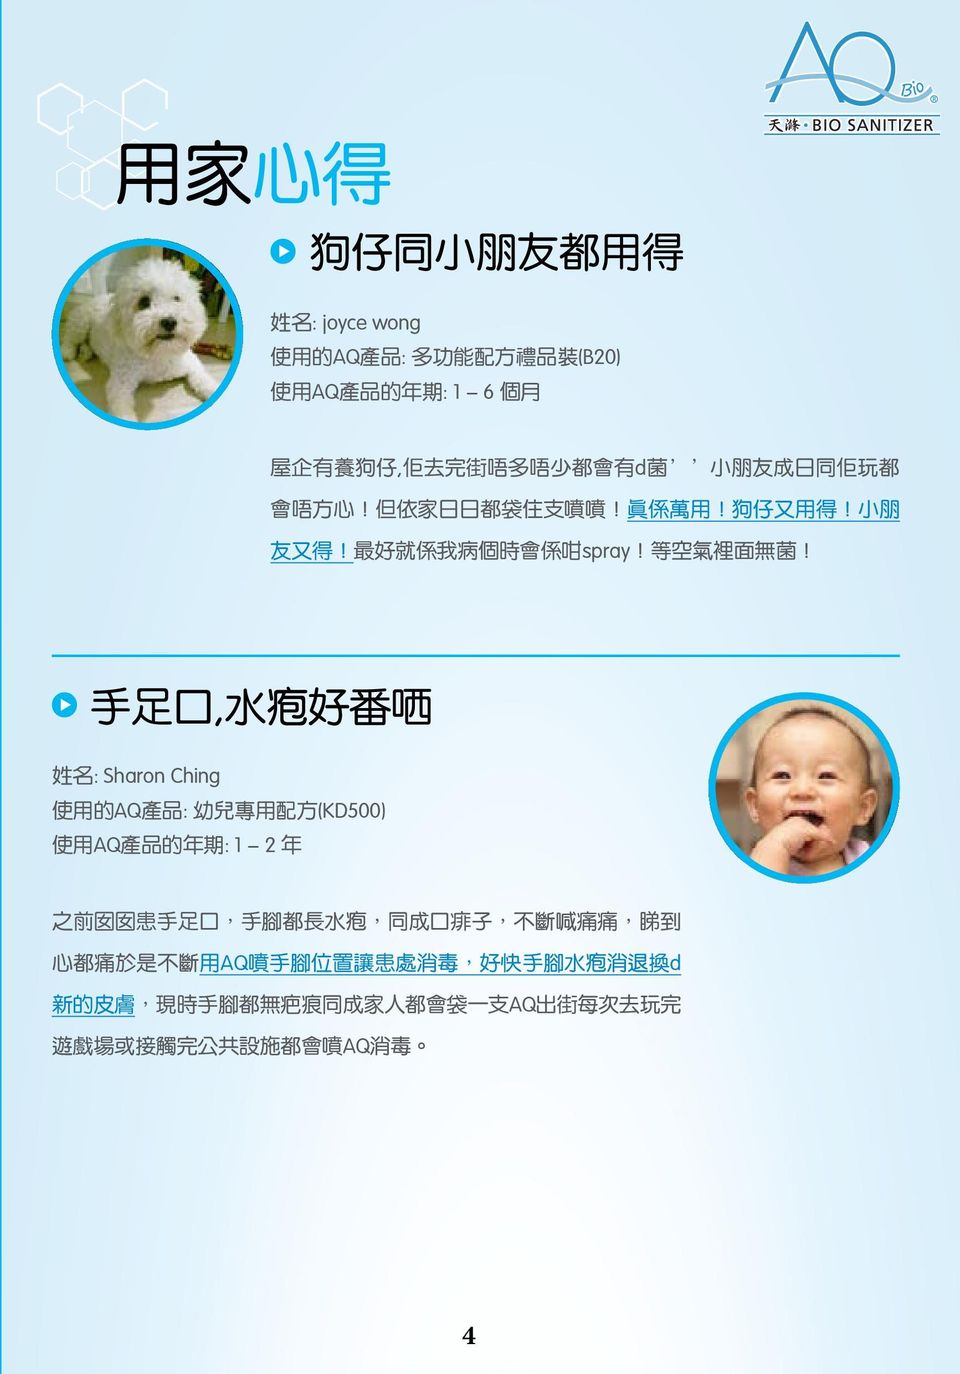 手 足 口, 水 疱 好 番 哂 姓 名 : Sharon Ching 使 用 的 AQ 產 品 : 幼 兒 專 用 配 方 (KD500) 使 用 AQ 產 品 的 年 期 : 1-2 年 之 前 囡 囡 患 手 足 口, 手 腳 都 長 水 疱, 同 成 口 痱